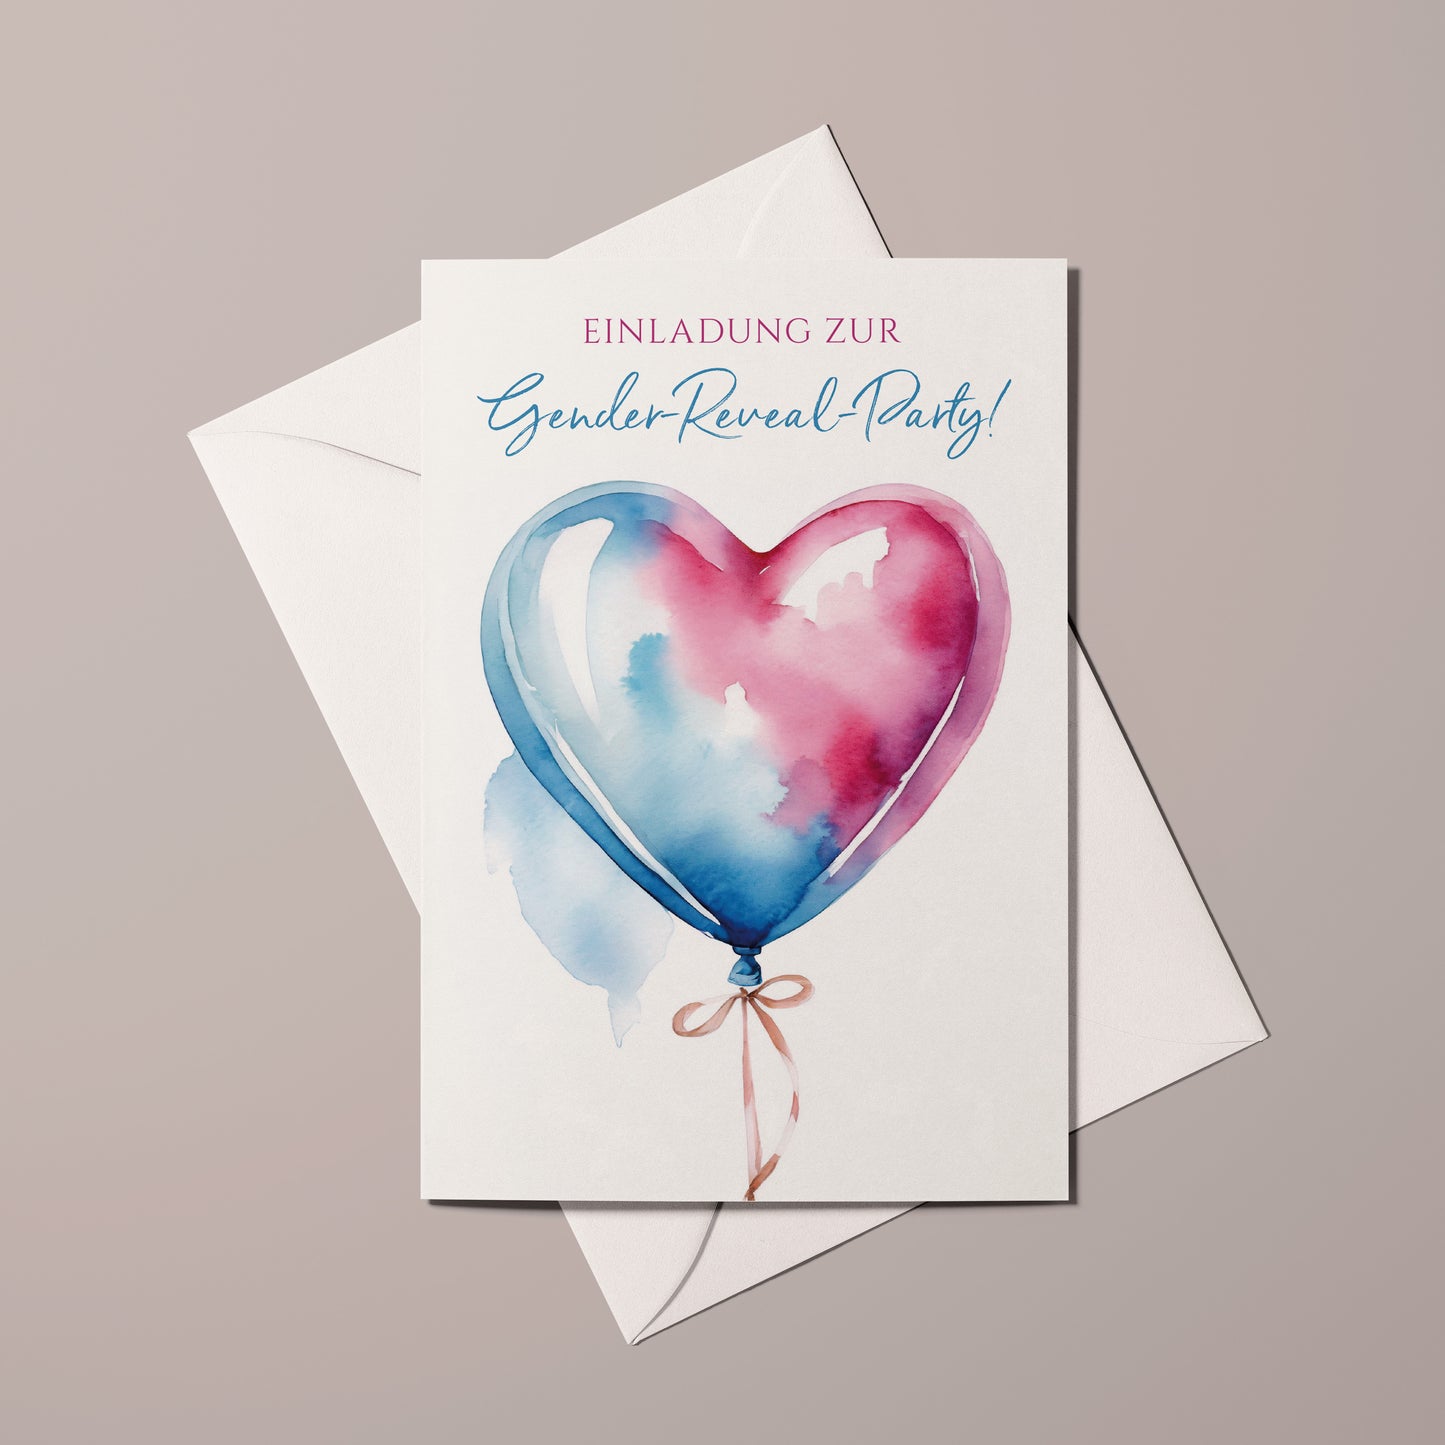 Einladungskarte Gender Reveal Party | Herzballon rosa & blau - Textvorlage